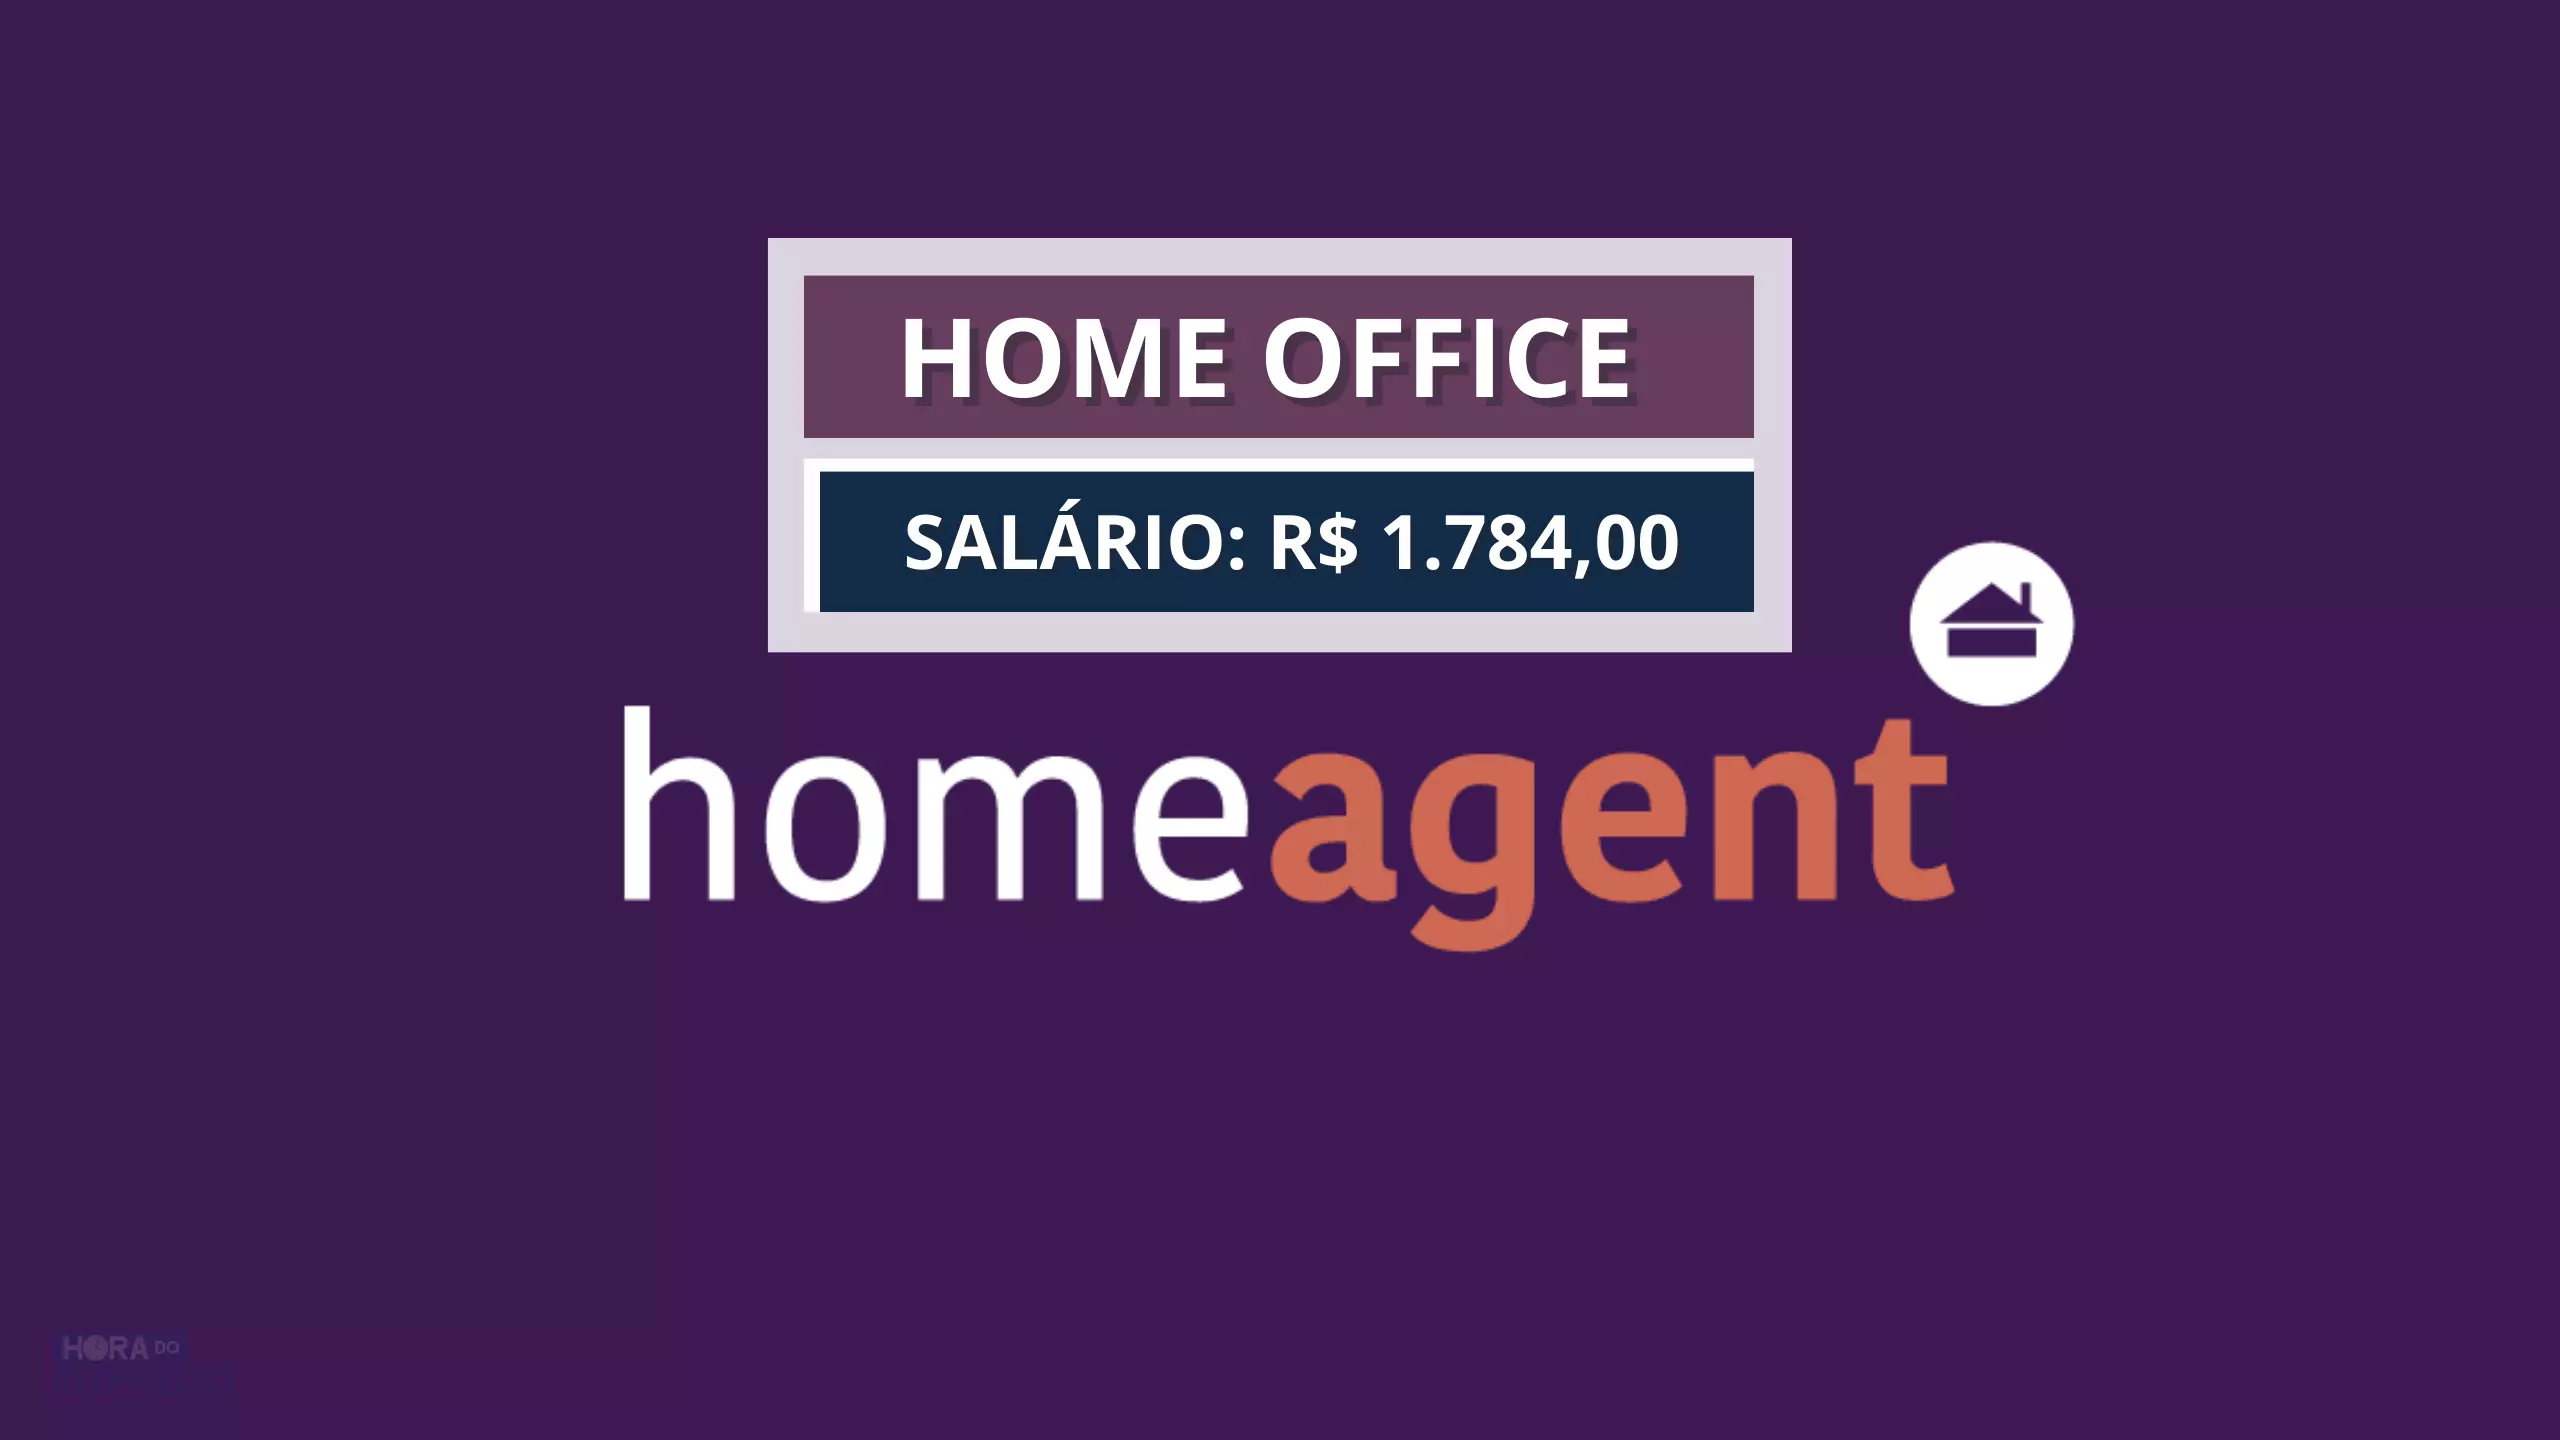 Home Agent abre vaga 100% Home Office para Agente de Atendimento com salário de R$ 1.784,00 e ainda fornece notebook, mouse e headset